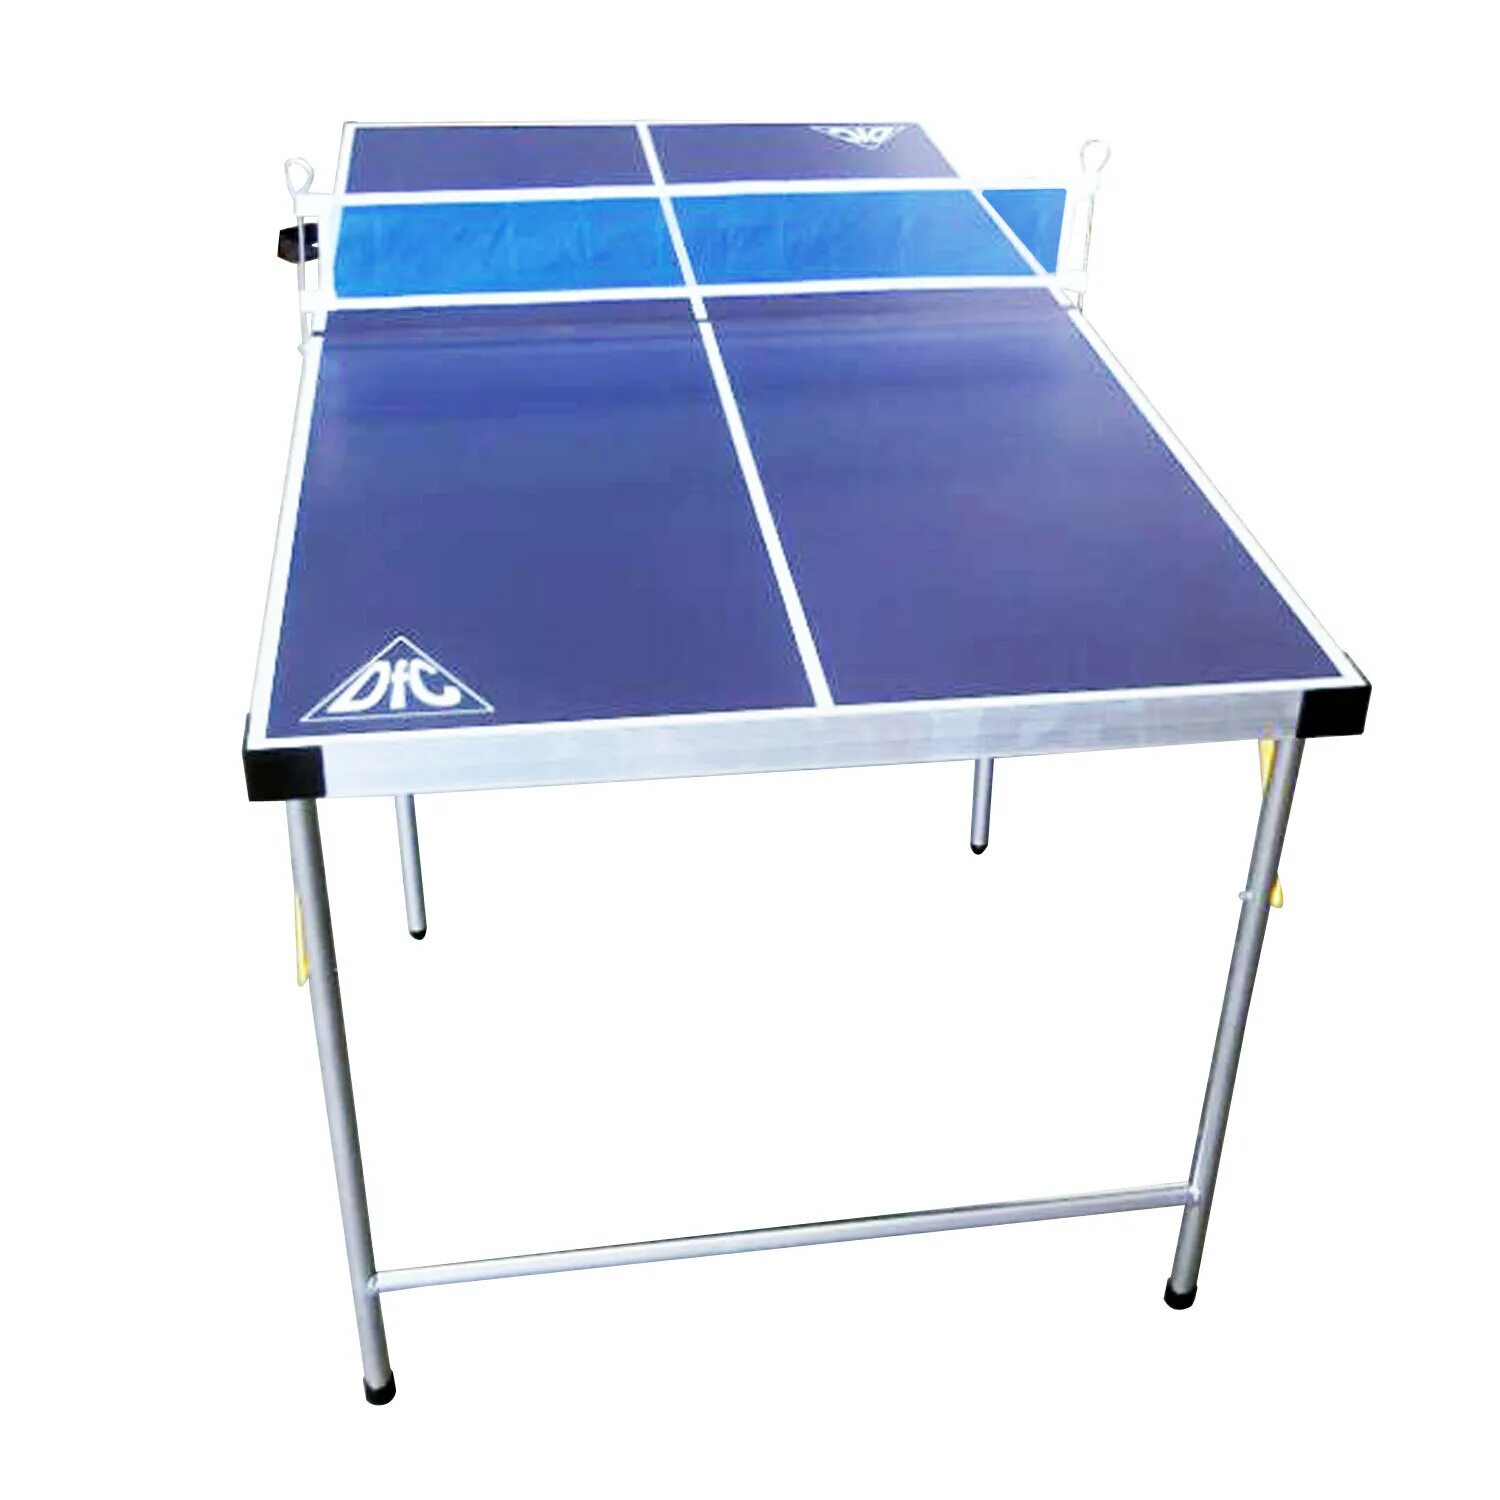 Теннисный стол детский для помещений DFC DS-T-009. Теннисный стол детский DFC DS-T-009 поле 9 мм, синий, складной. Теннисный стол Joola 2000-s. Теннисный стол Neottec Midi. Стол для пинпонга